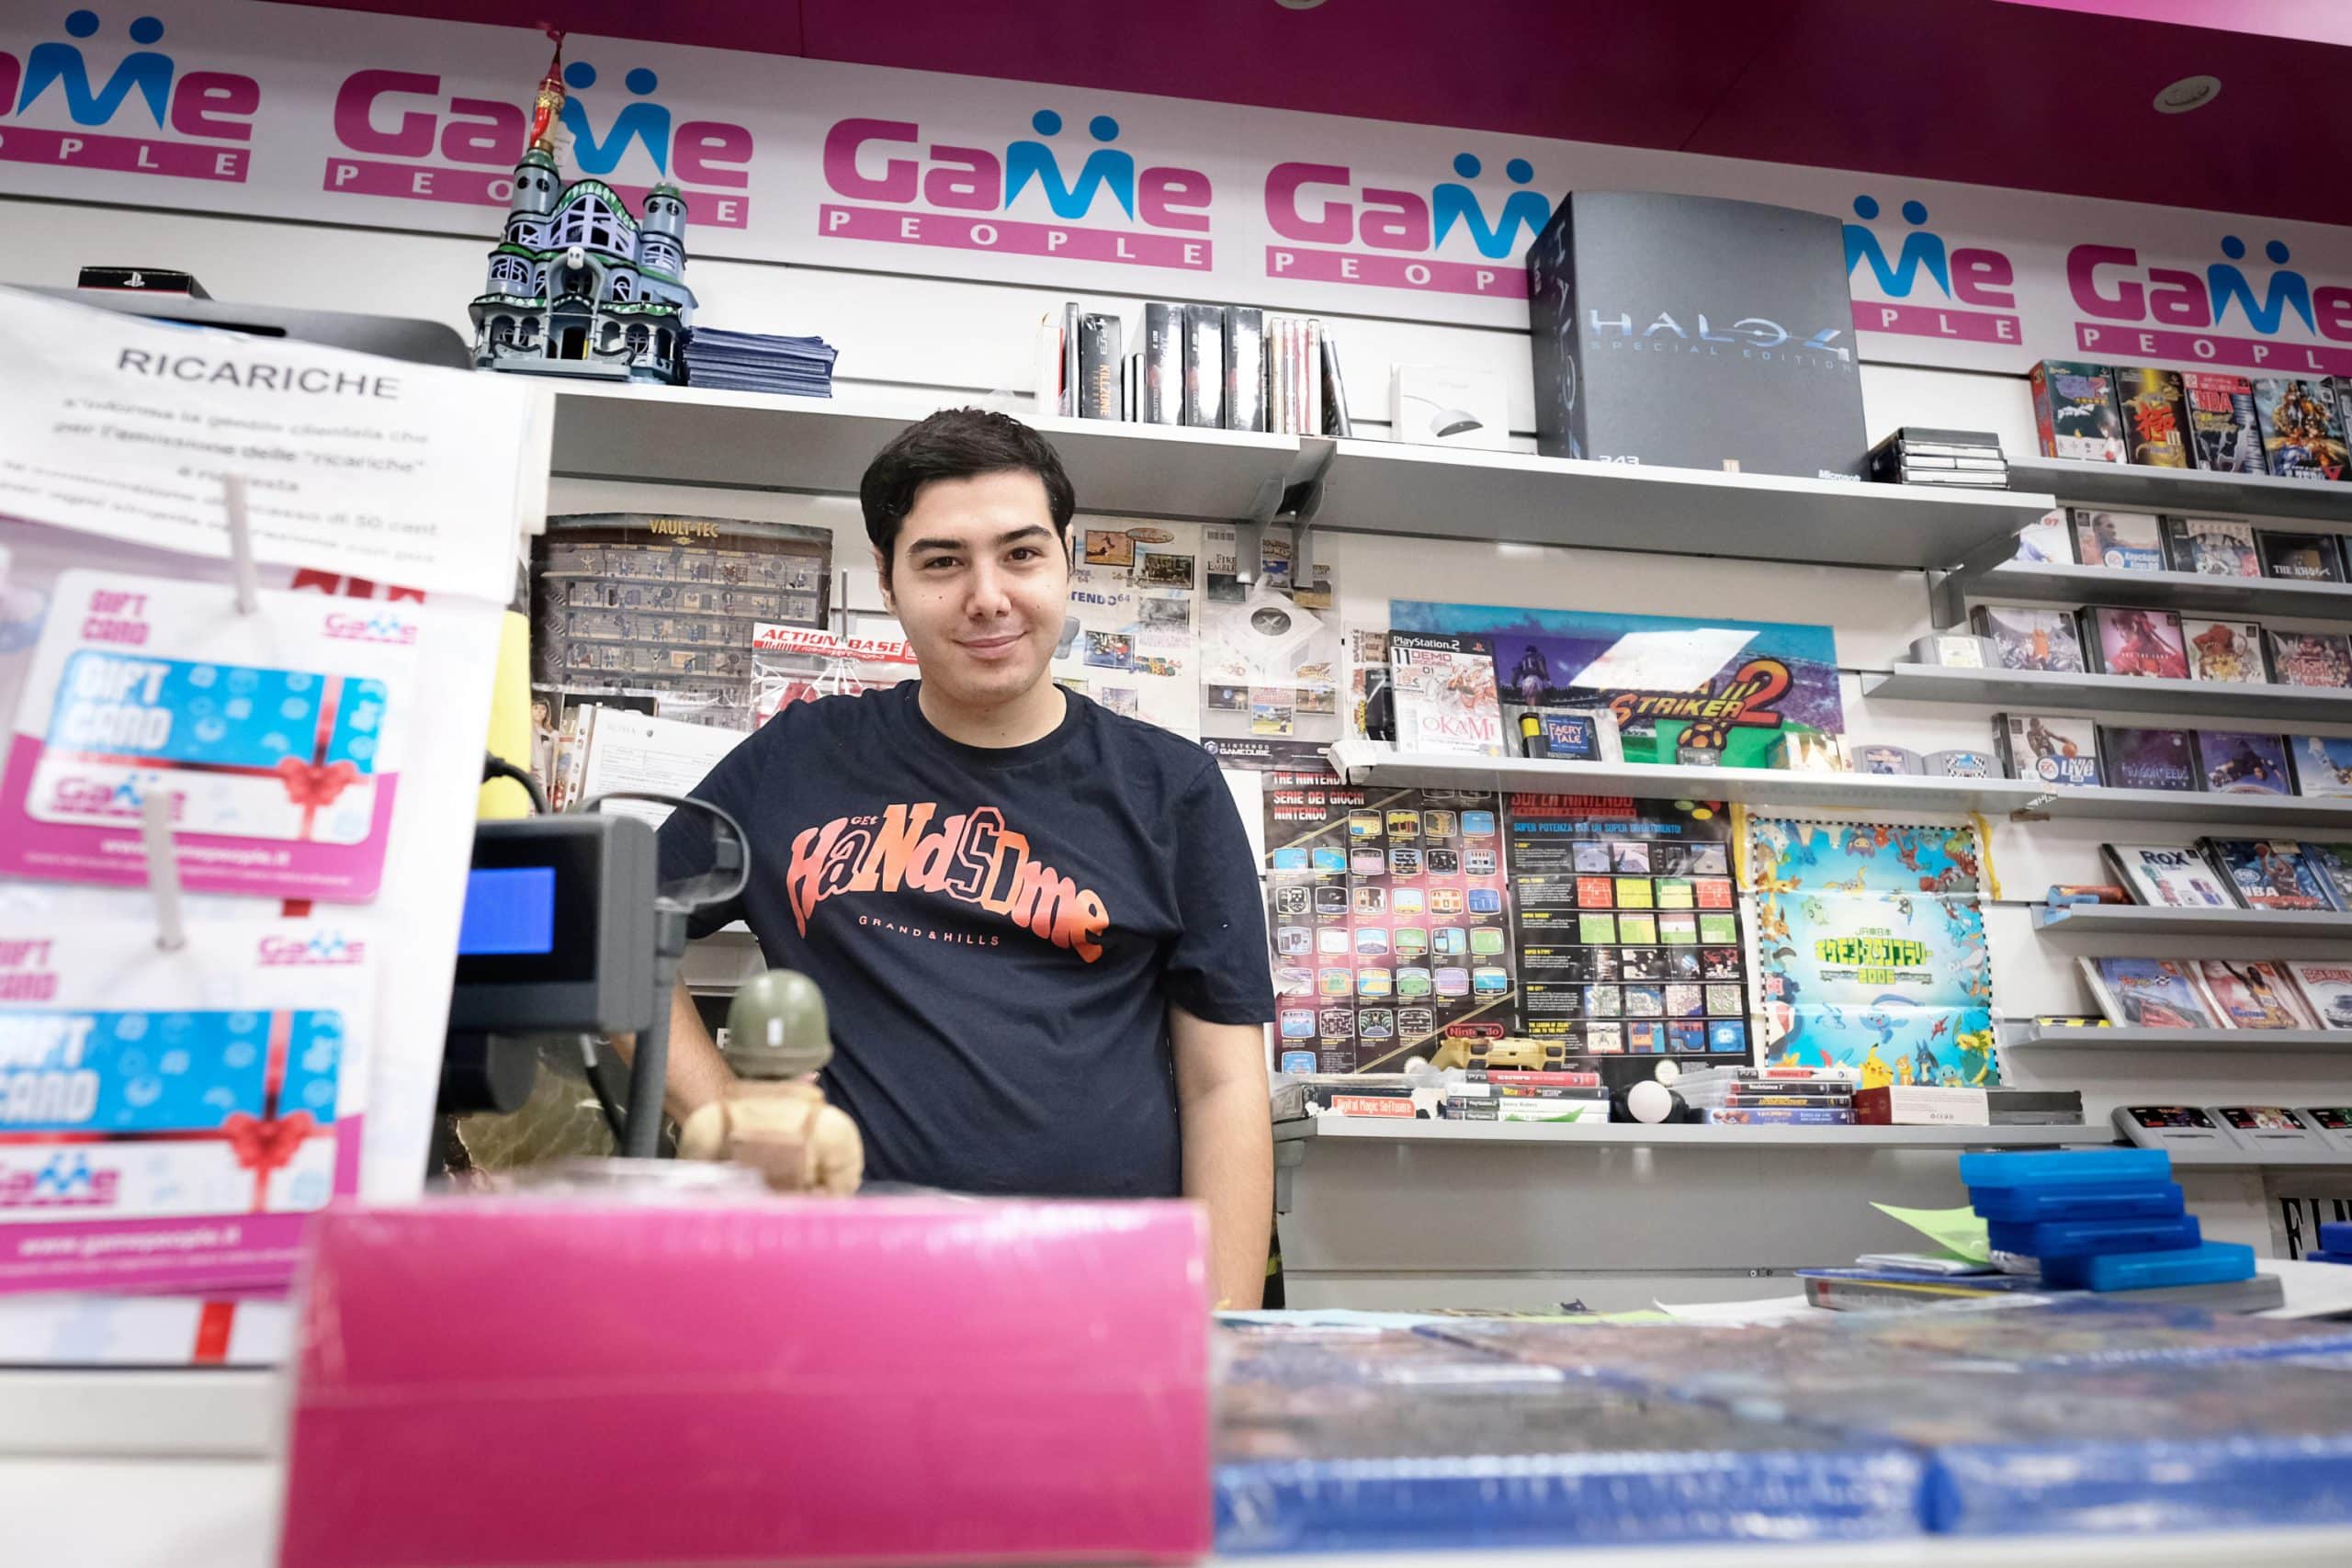 Mattia, l’autismo non ferma il suo sogno: oggi lavora in un negozio di videogames